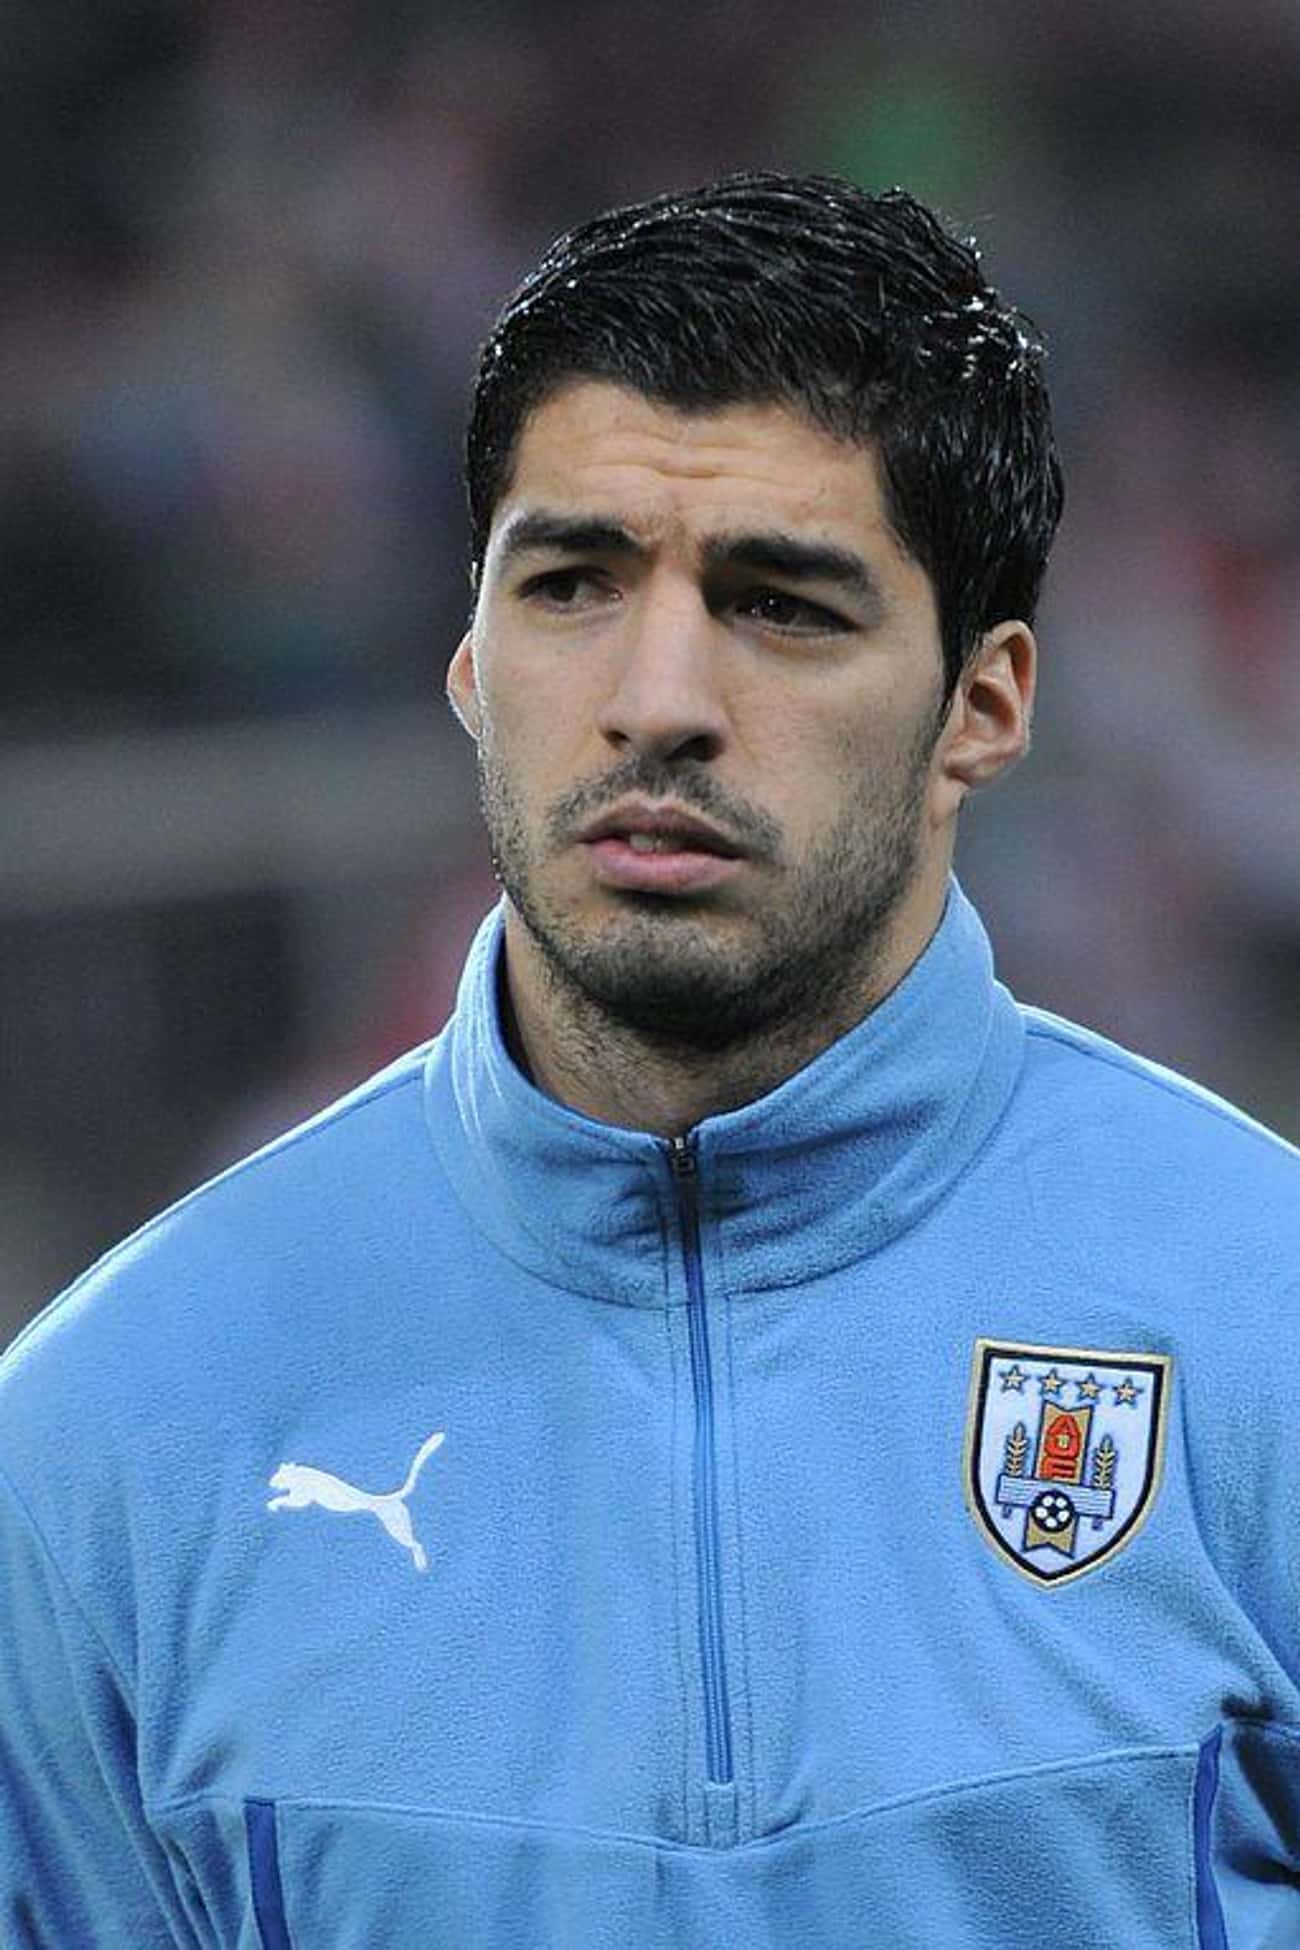 2014: Uruguay’s Luis Suarez Bites Italy’s Georgio Chiellini 